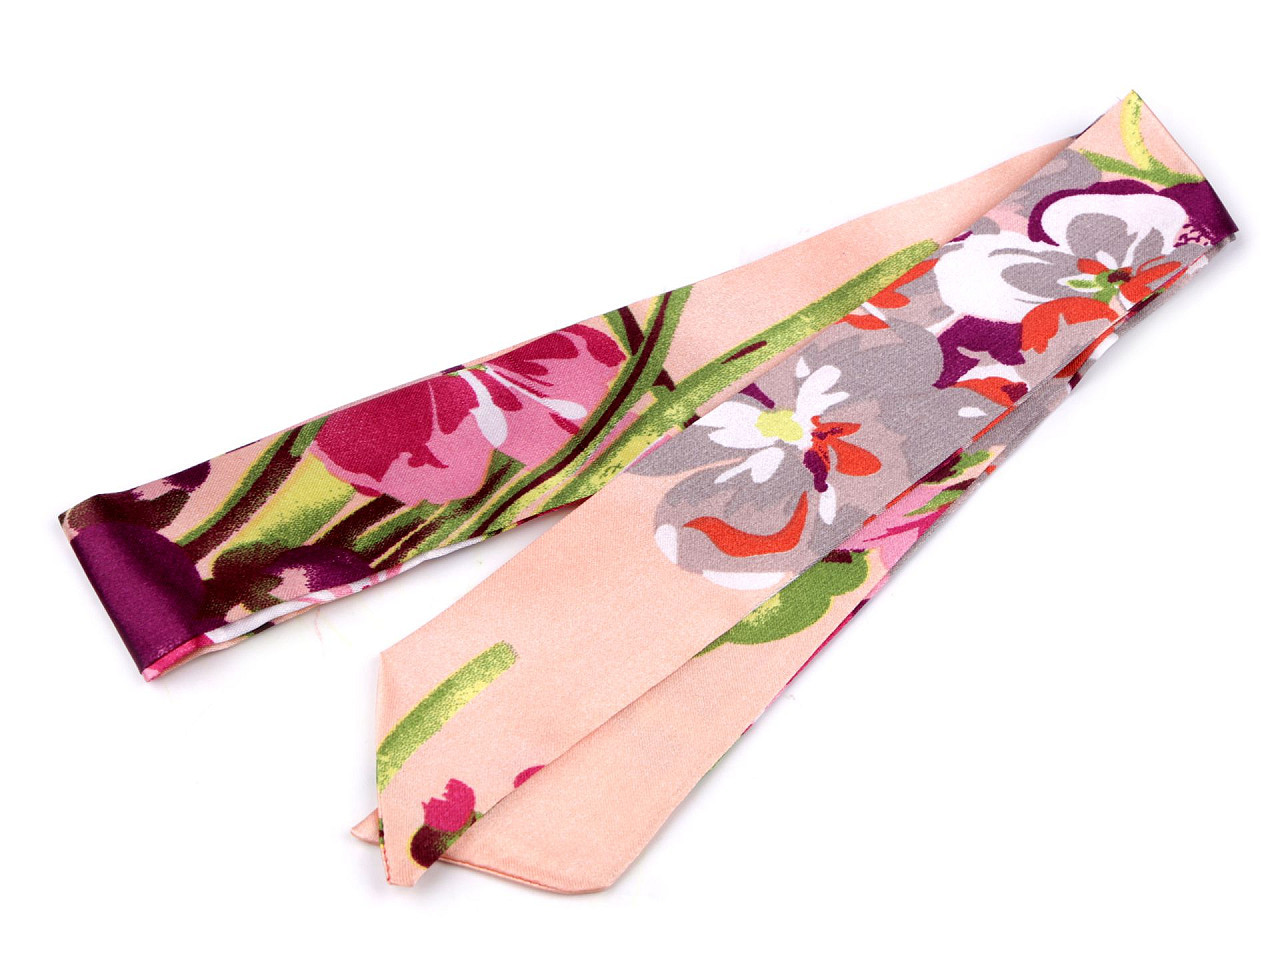 Šátek úzký do vlasů, na krk, na kabelku jednobarevný, s květy, barva 9 pudrová květy